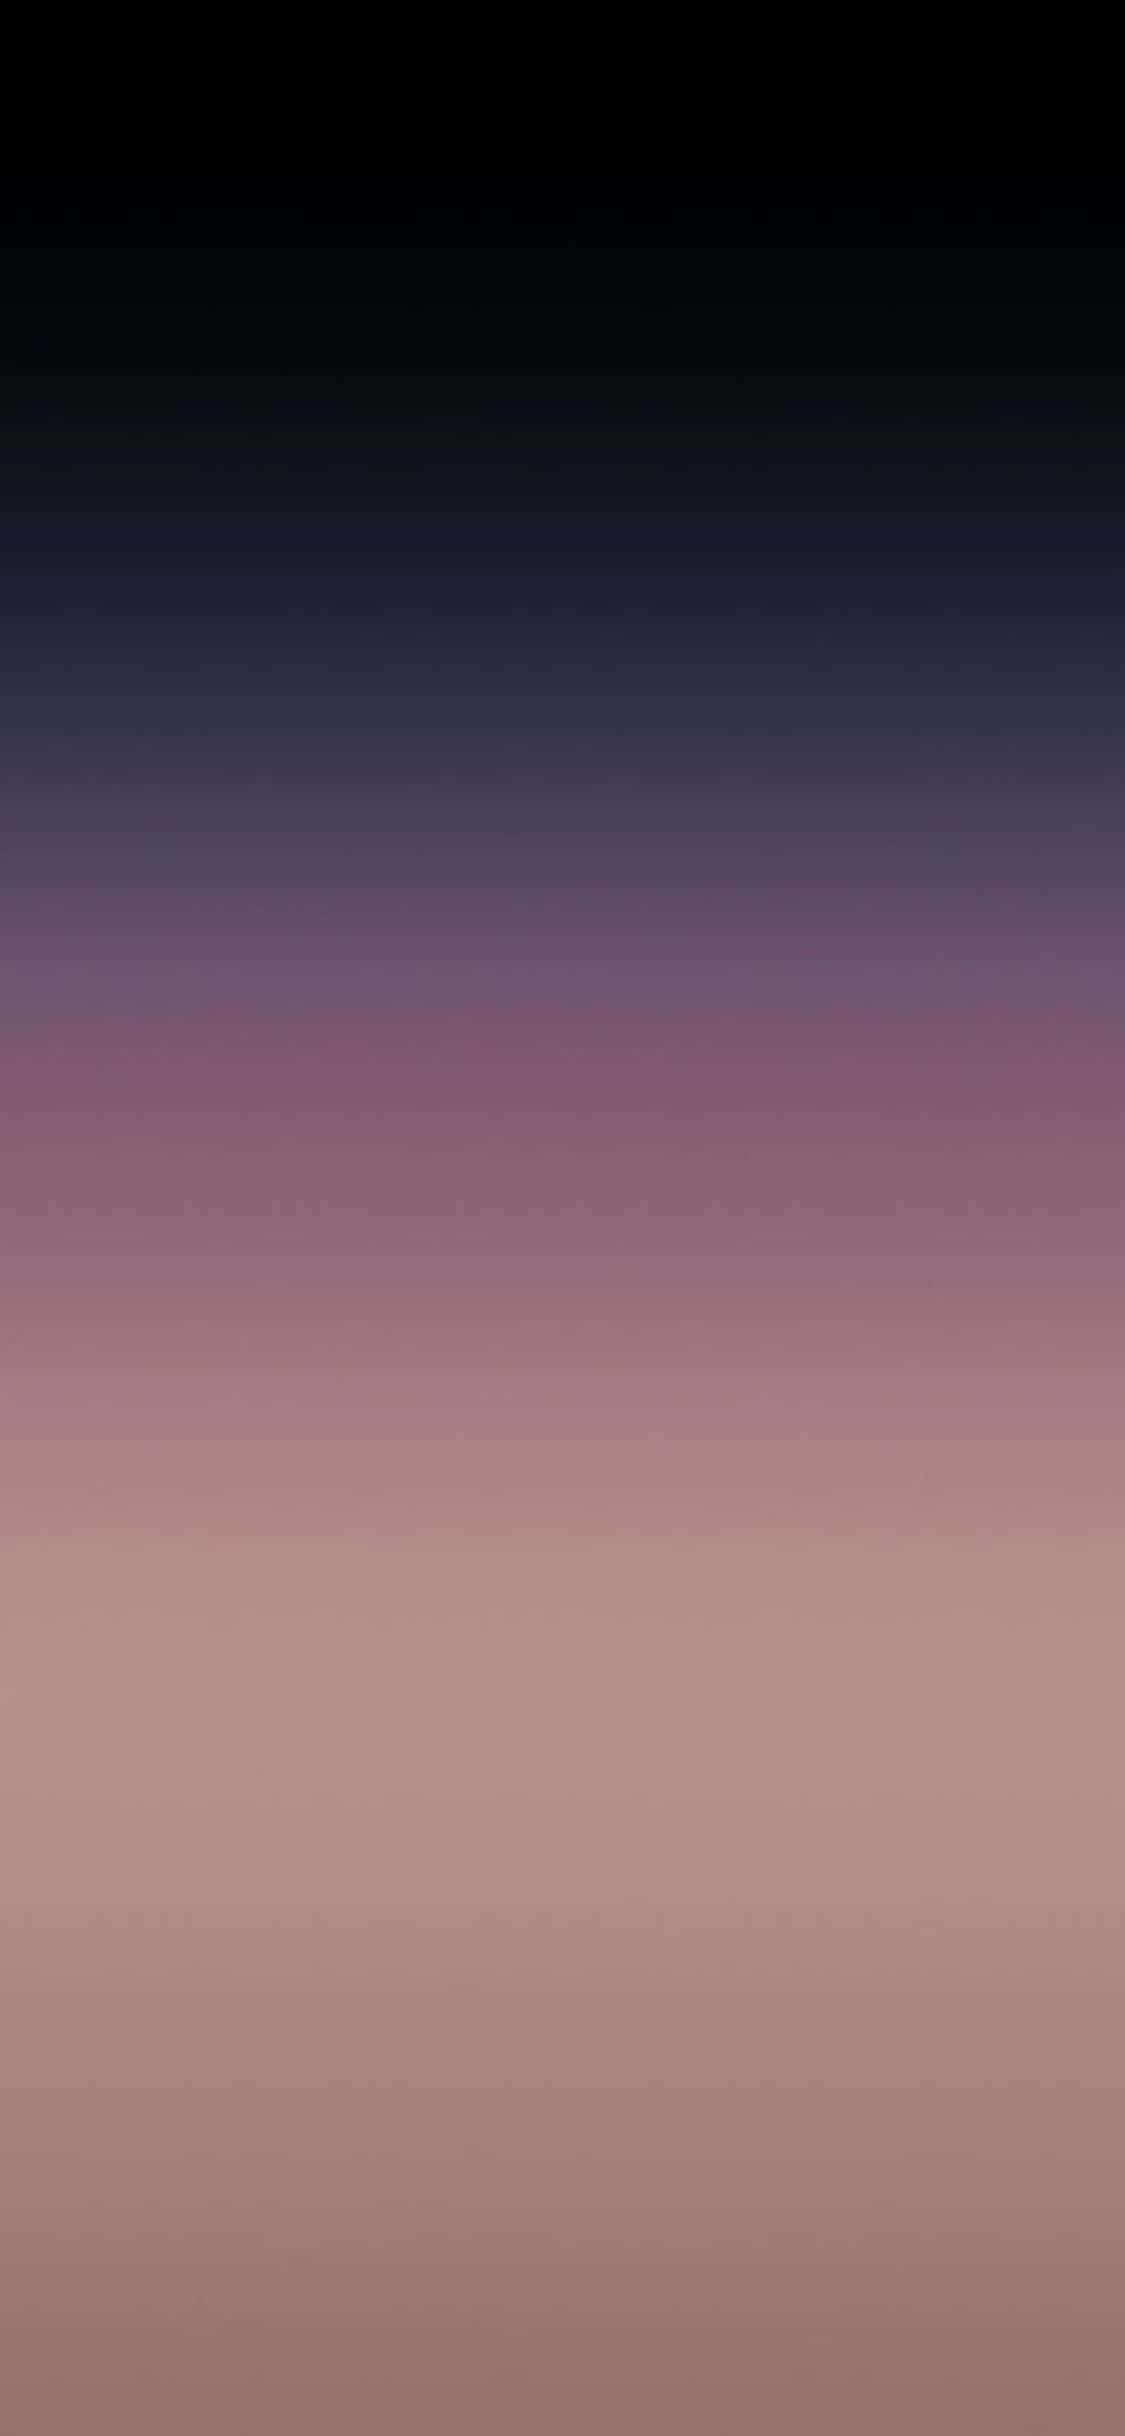 Iphone X Minimal Dark Purple Gradient Background